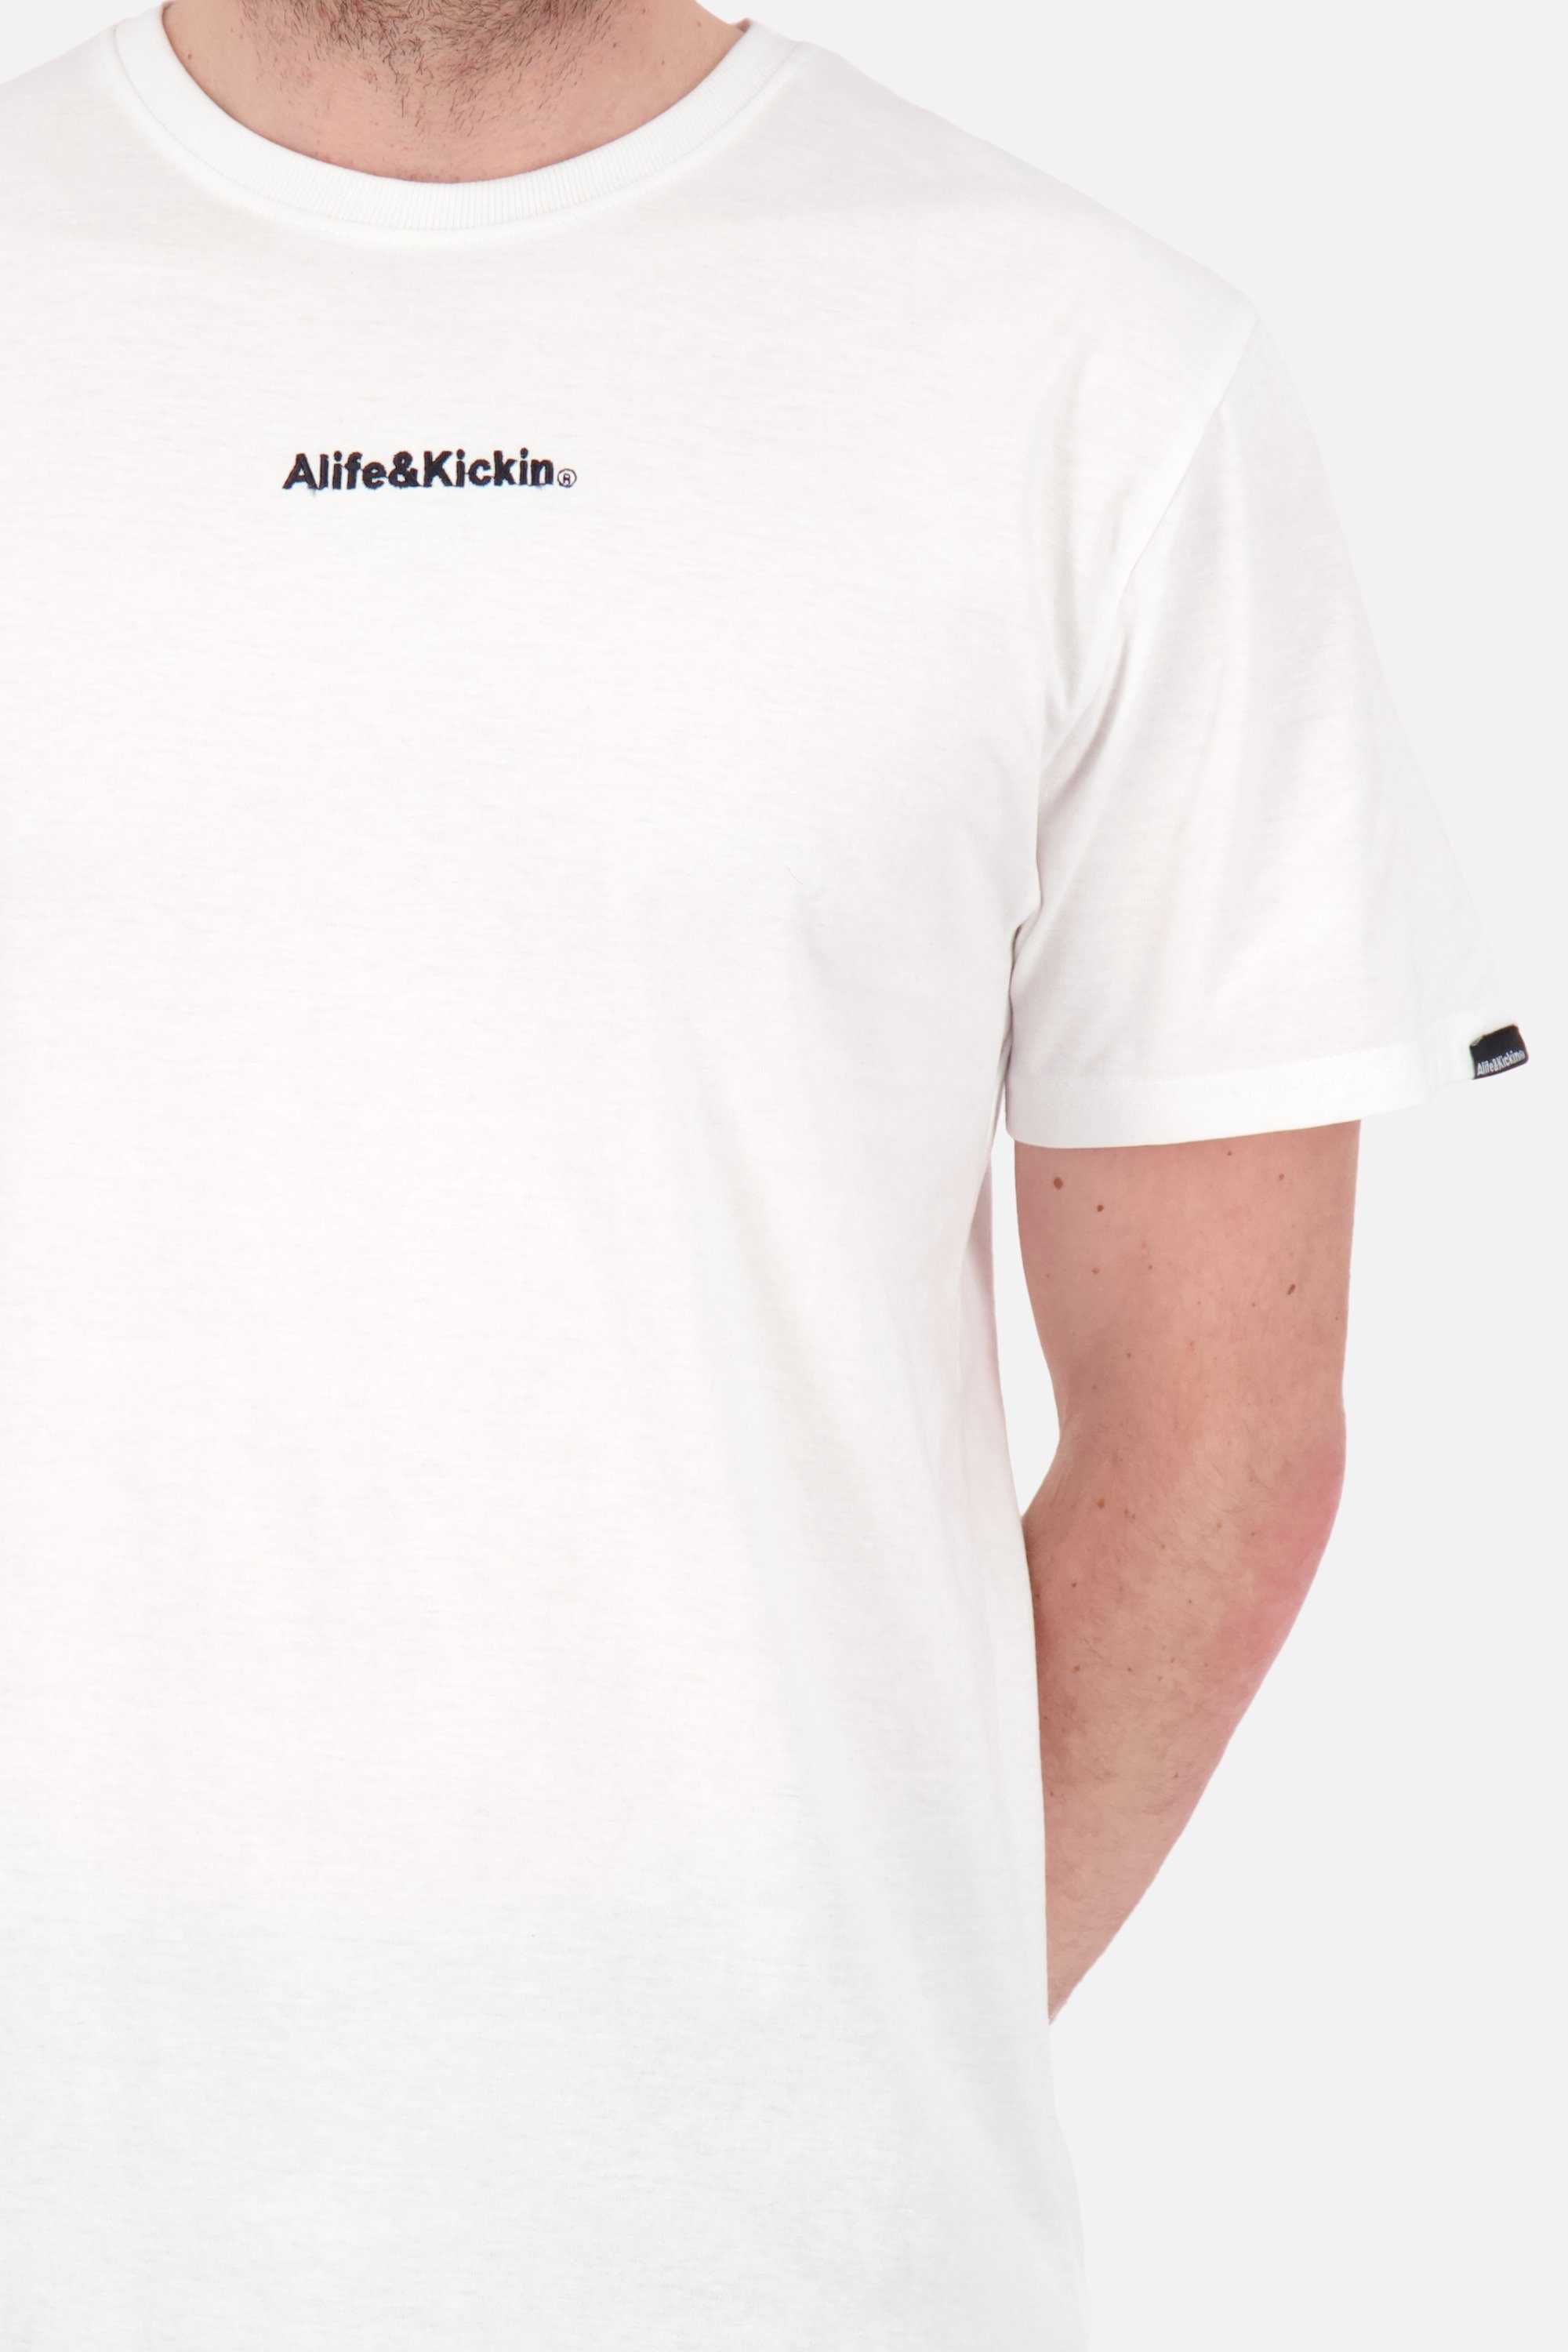 Alife & Kickin Shirt Herren AlfieAK white Rundhalsshirt Kurzarmshirt, Shirt E